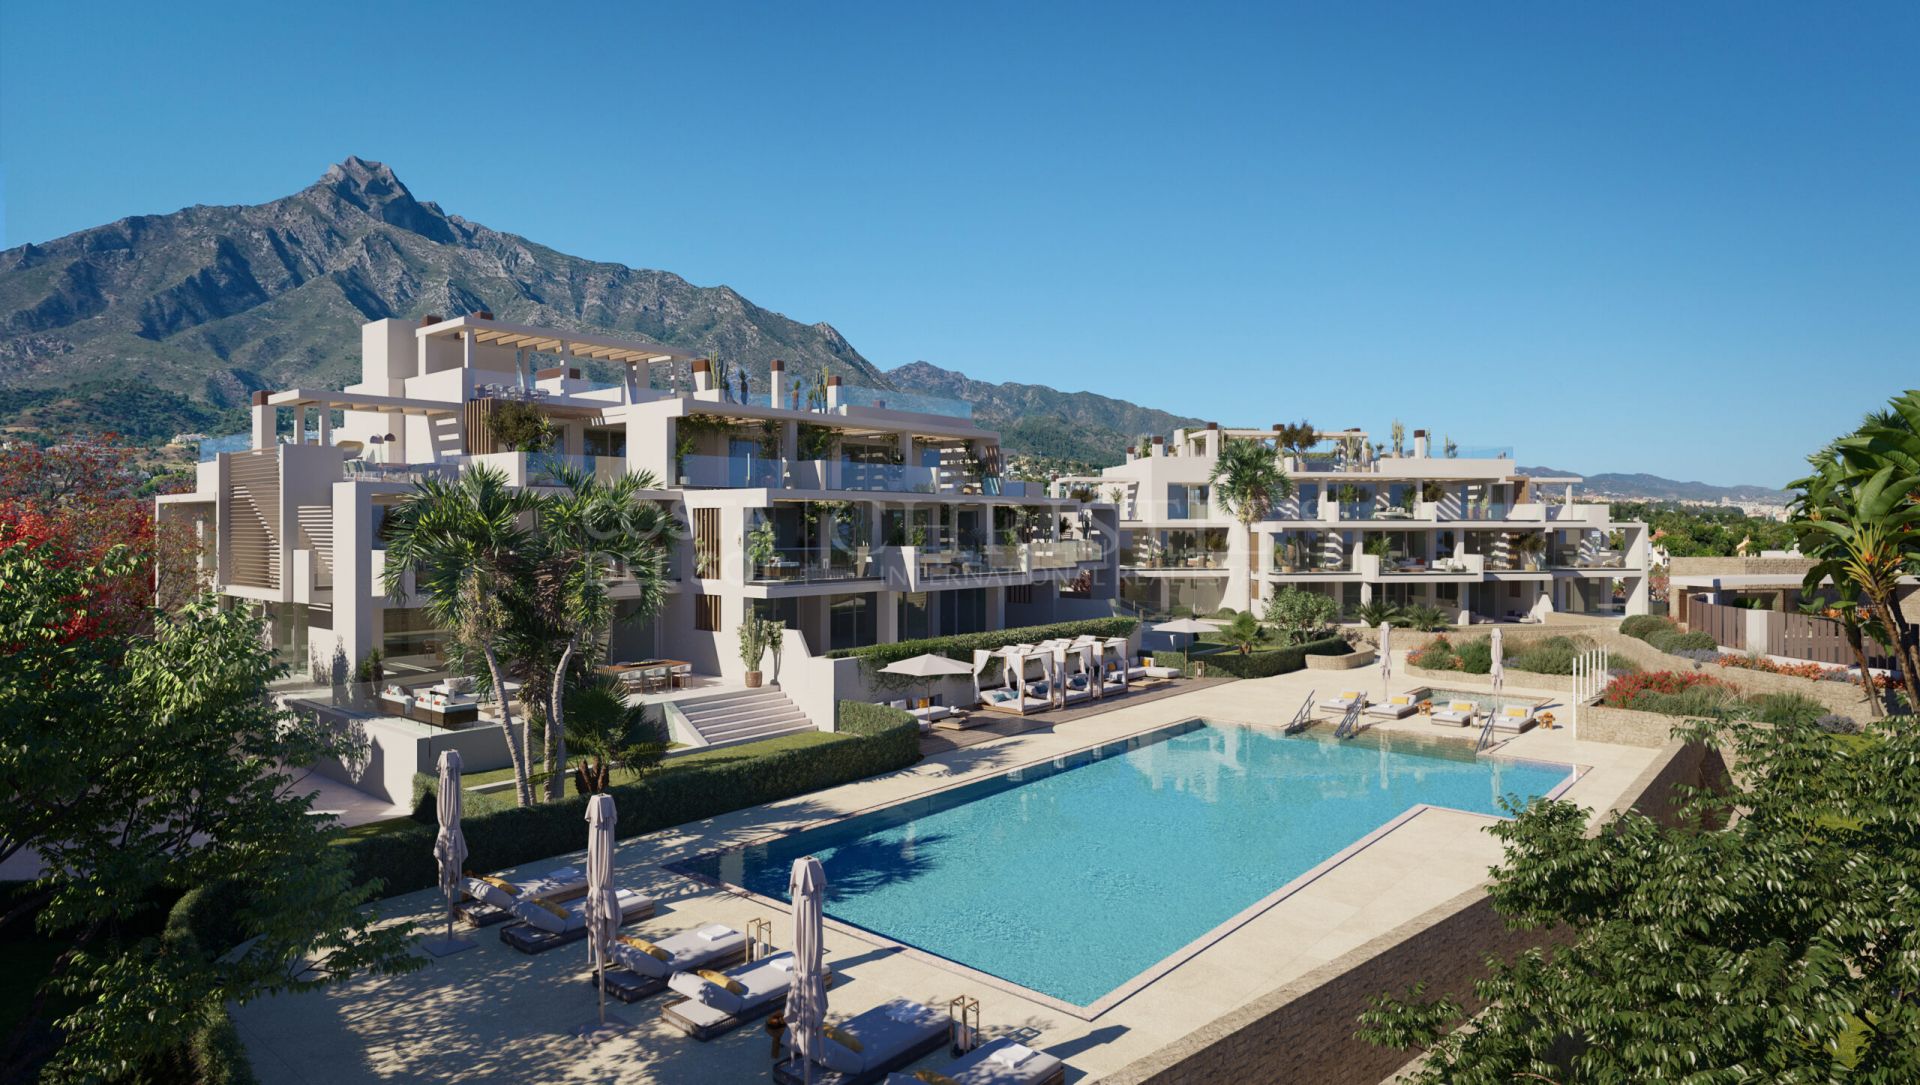 Earh, Señorio de Marbella, Marbella Złota Mila - Ekskluzywny kompleks nowych apartamentów i penthouse'ów przy Złotej Mili | Christie’s International Real Estate